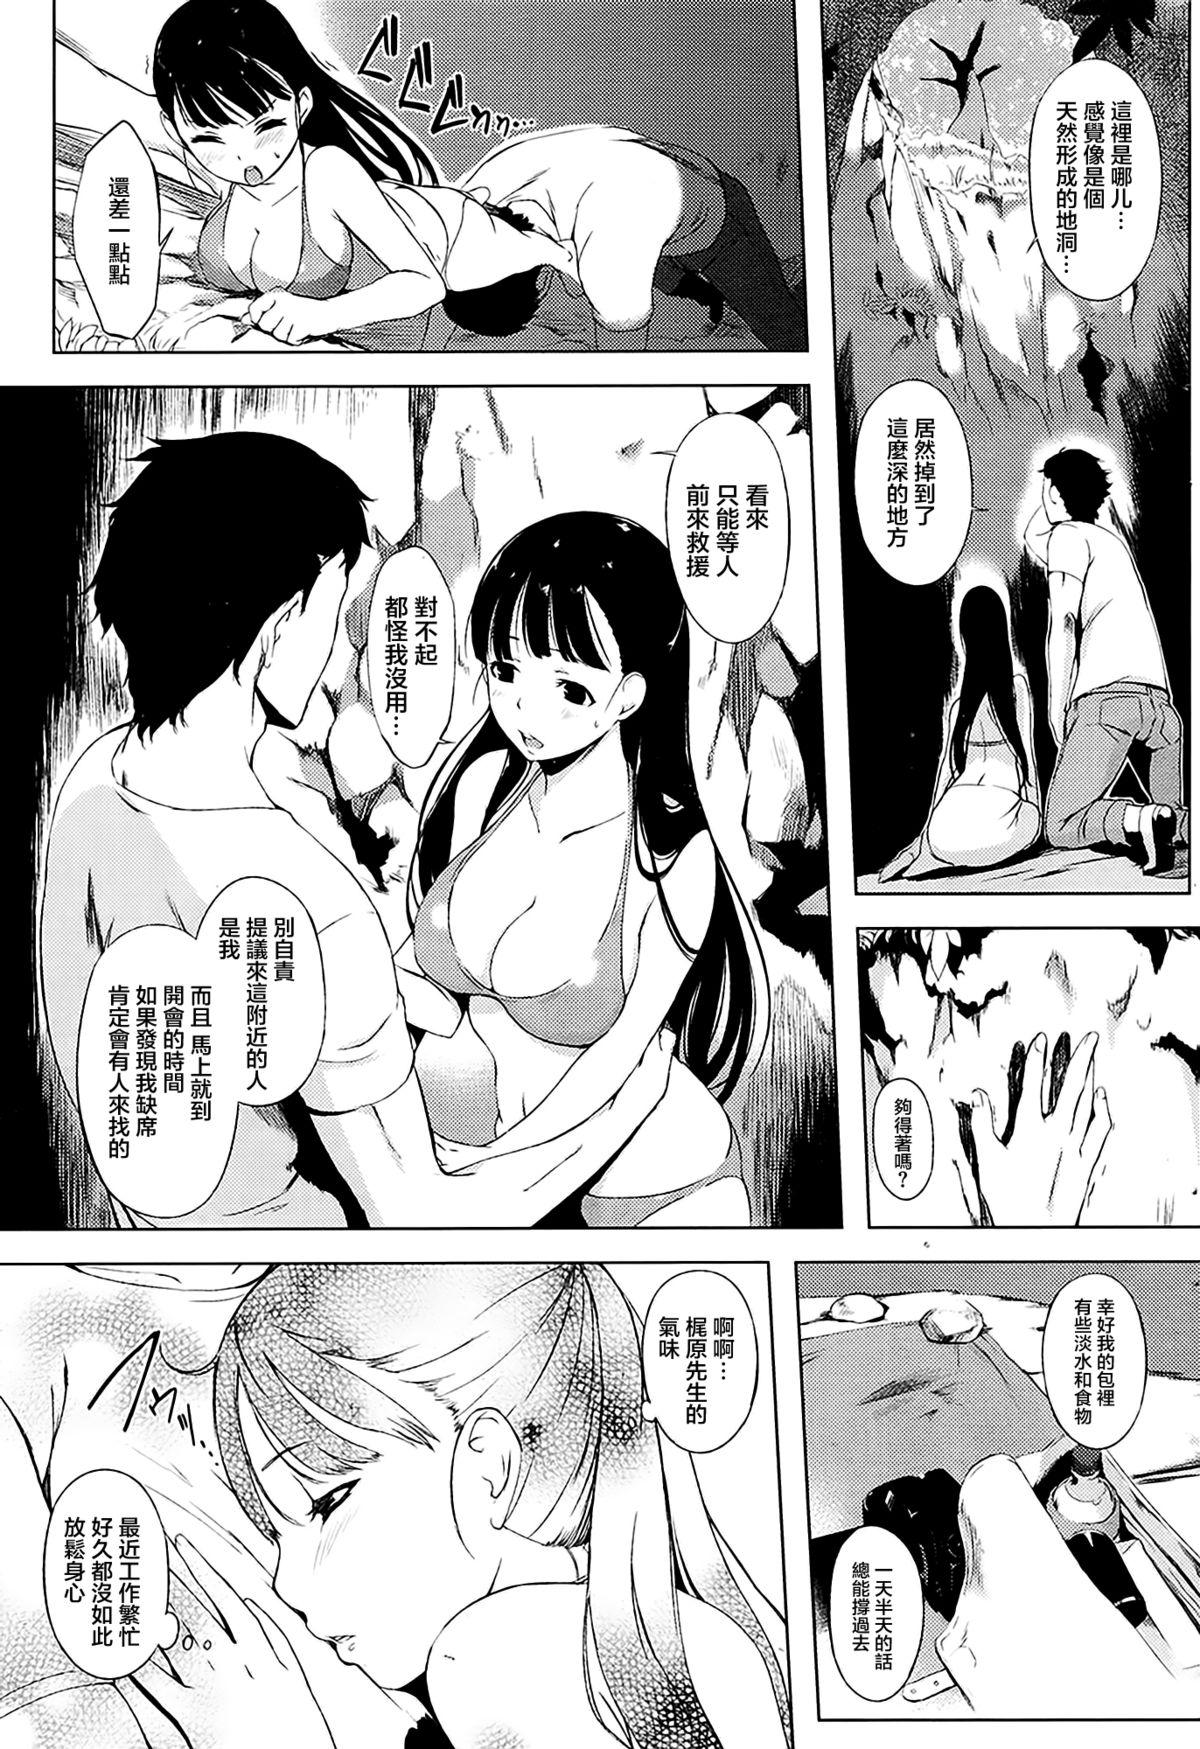 Cbt Giwaku to miwaku & Futari no omocha Amatuer - Page 8